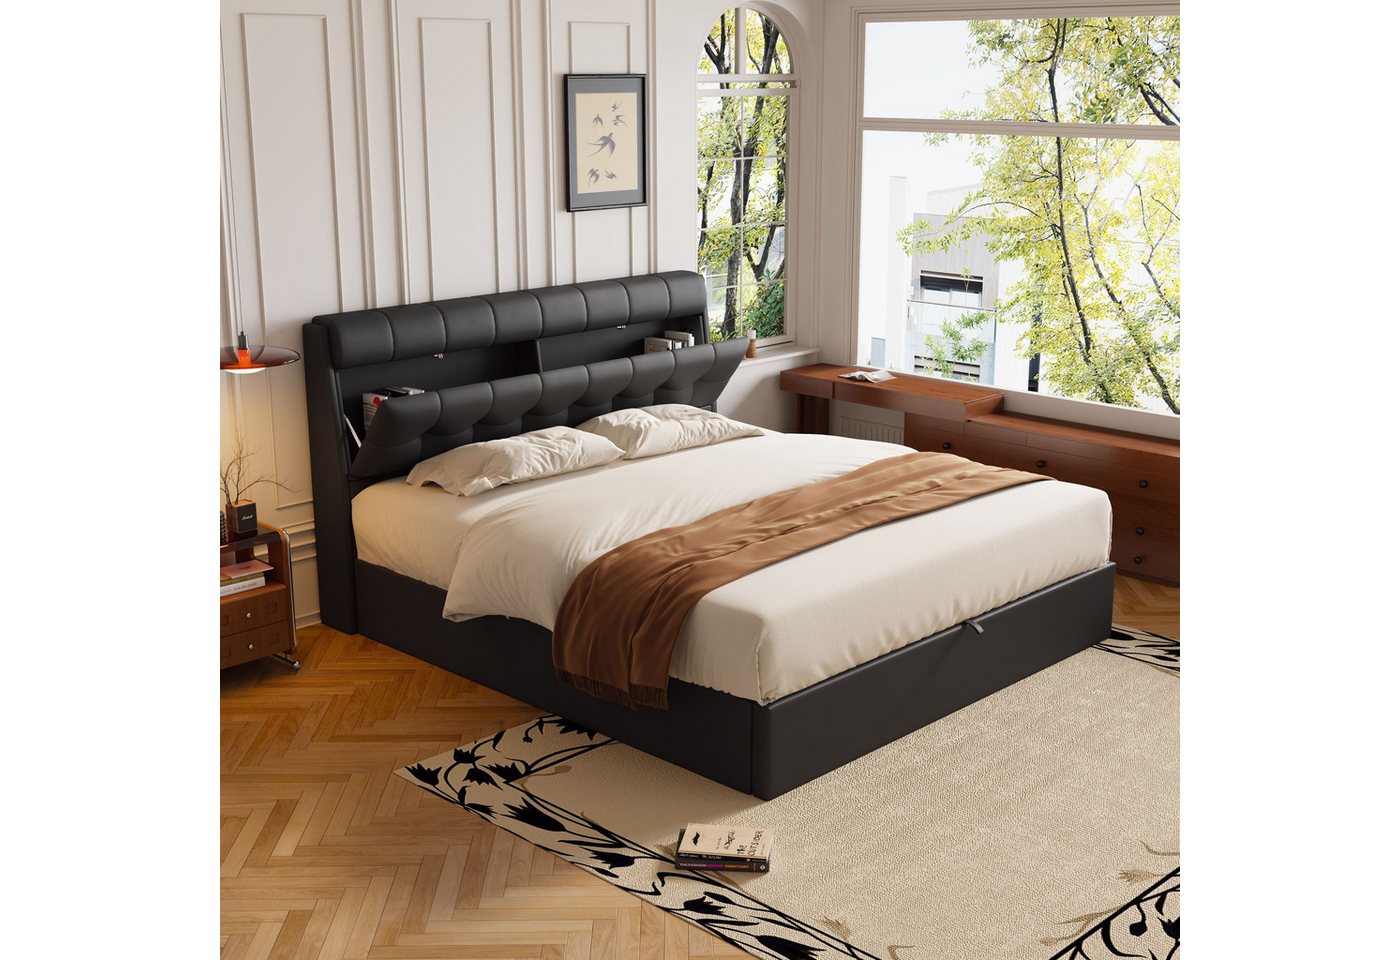 OKWISH Polsterbett Hydraulisches Bett (140*190cm), mit Lattenrost, verdeckt günstig online kaufen